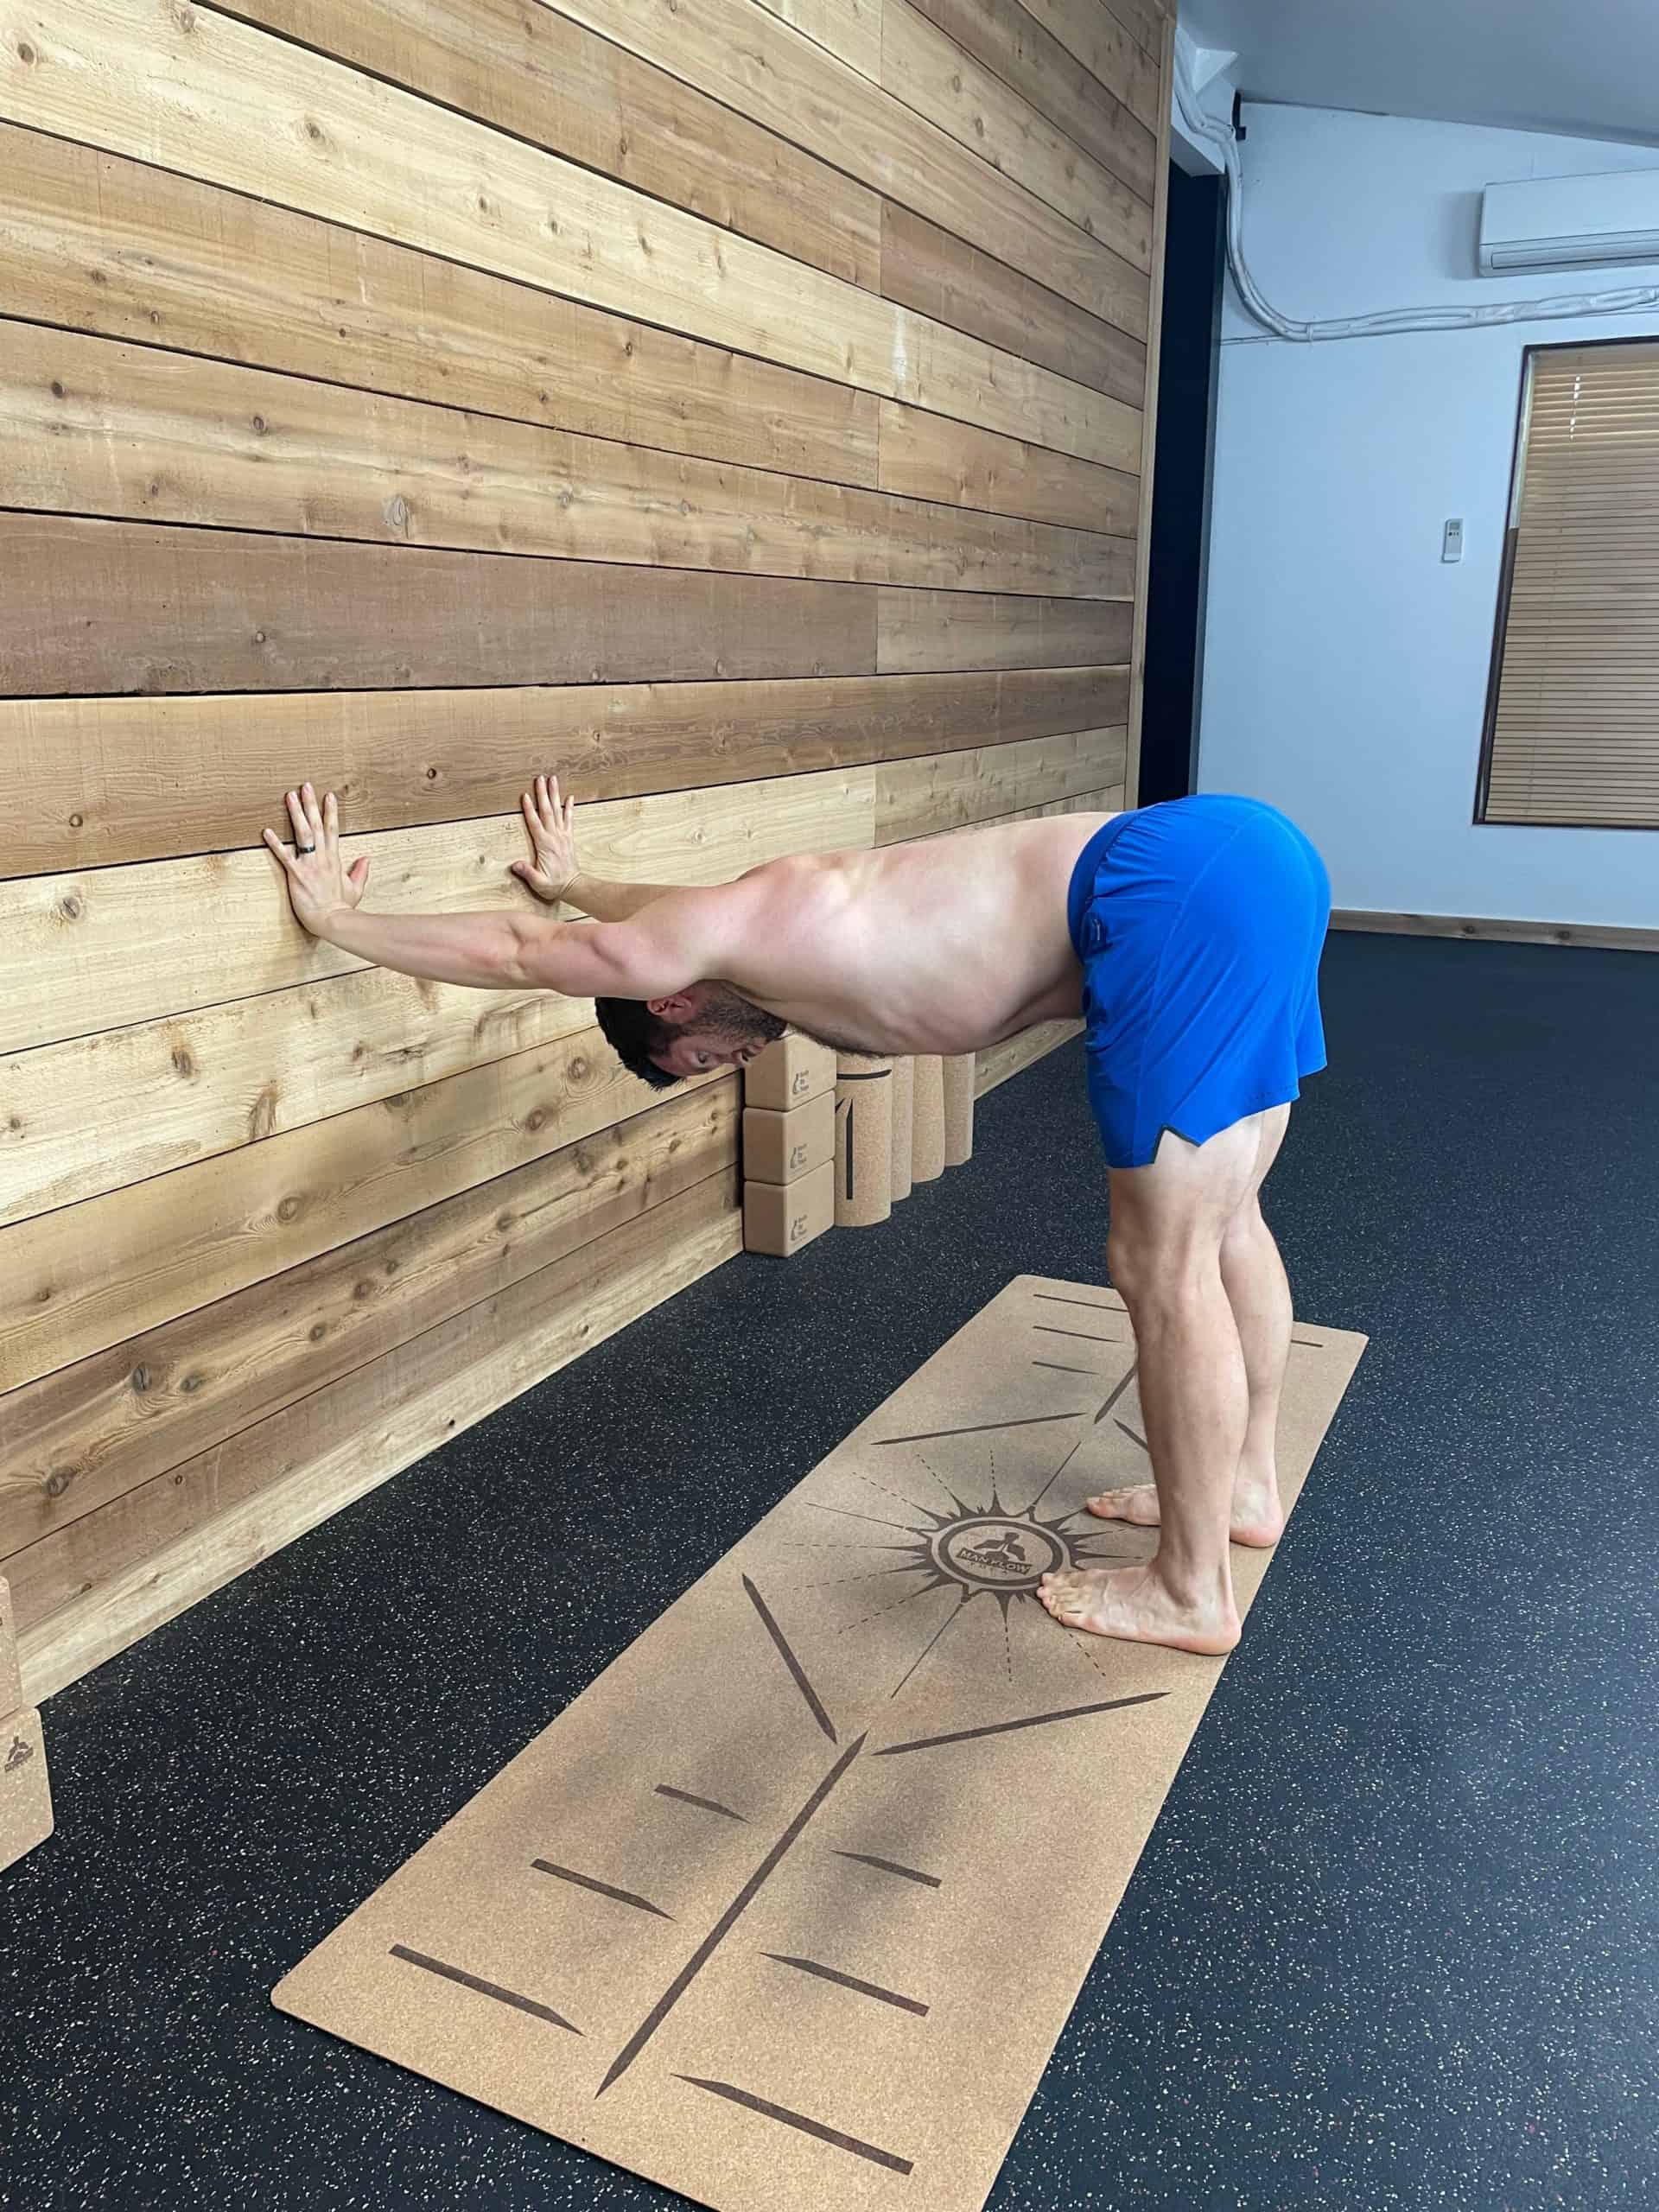 Upper Body Yoga Stretches - Downdog on A Wall